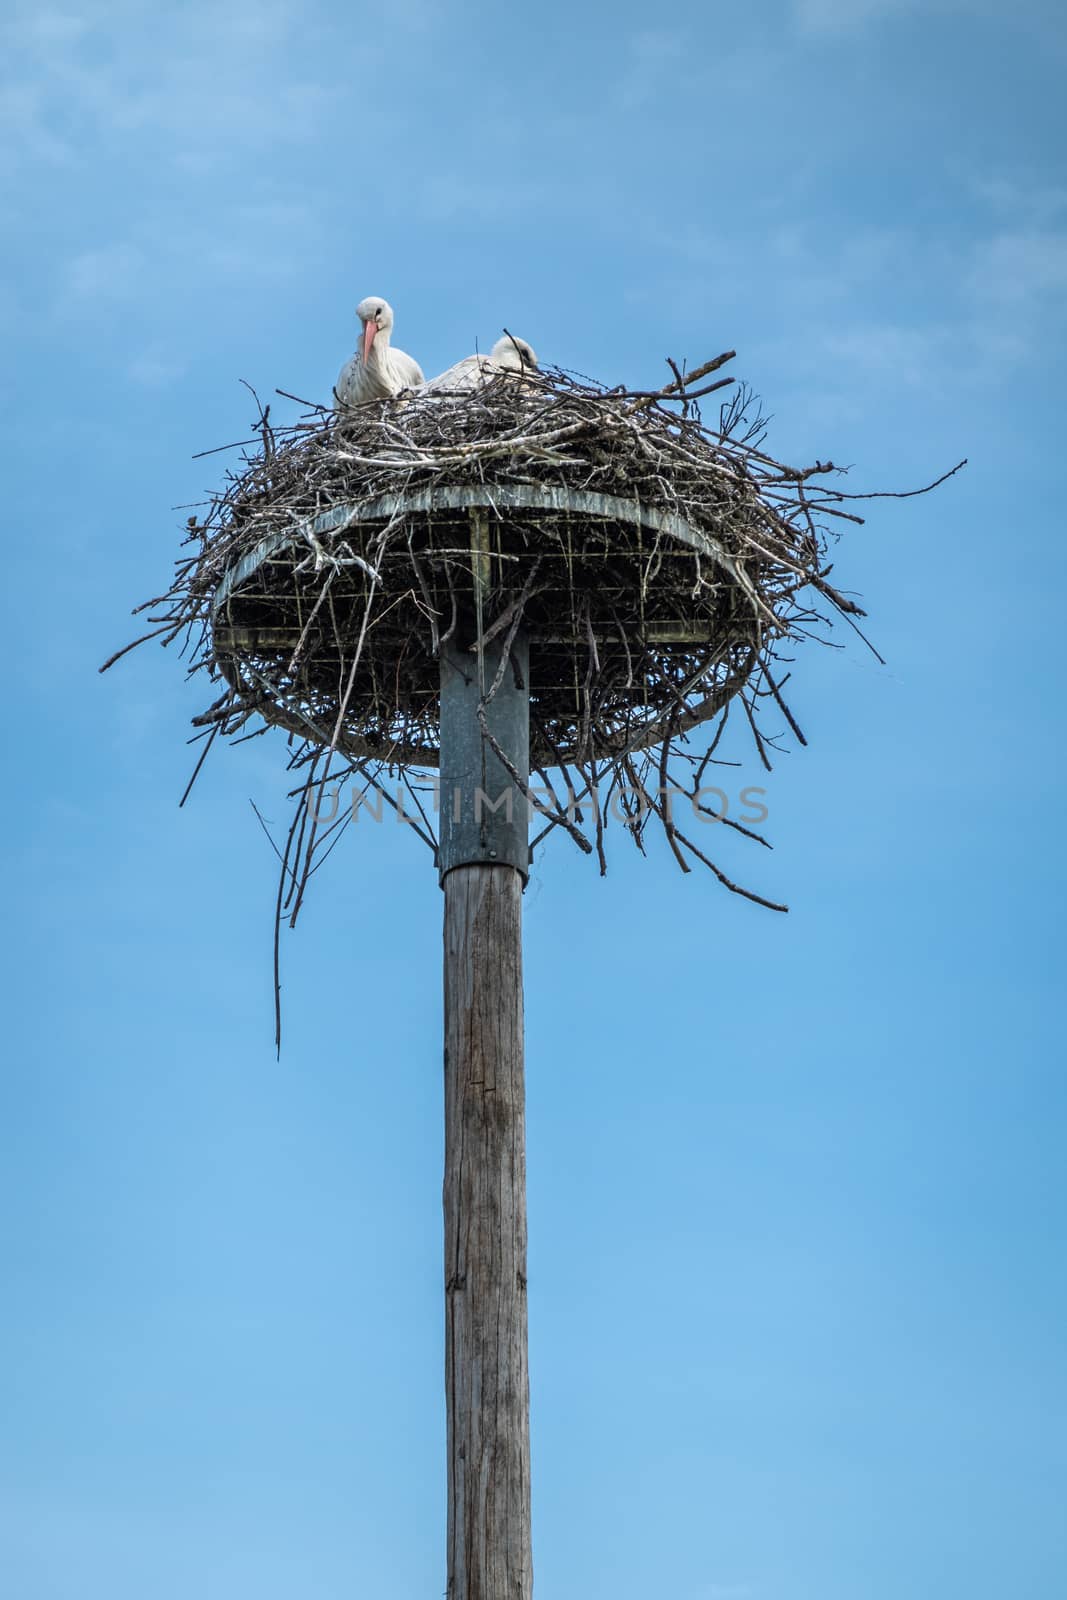 Two Storks on nest in Zwin Bird Refuge, Knokke-Heist, Flanders, by Claudine